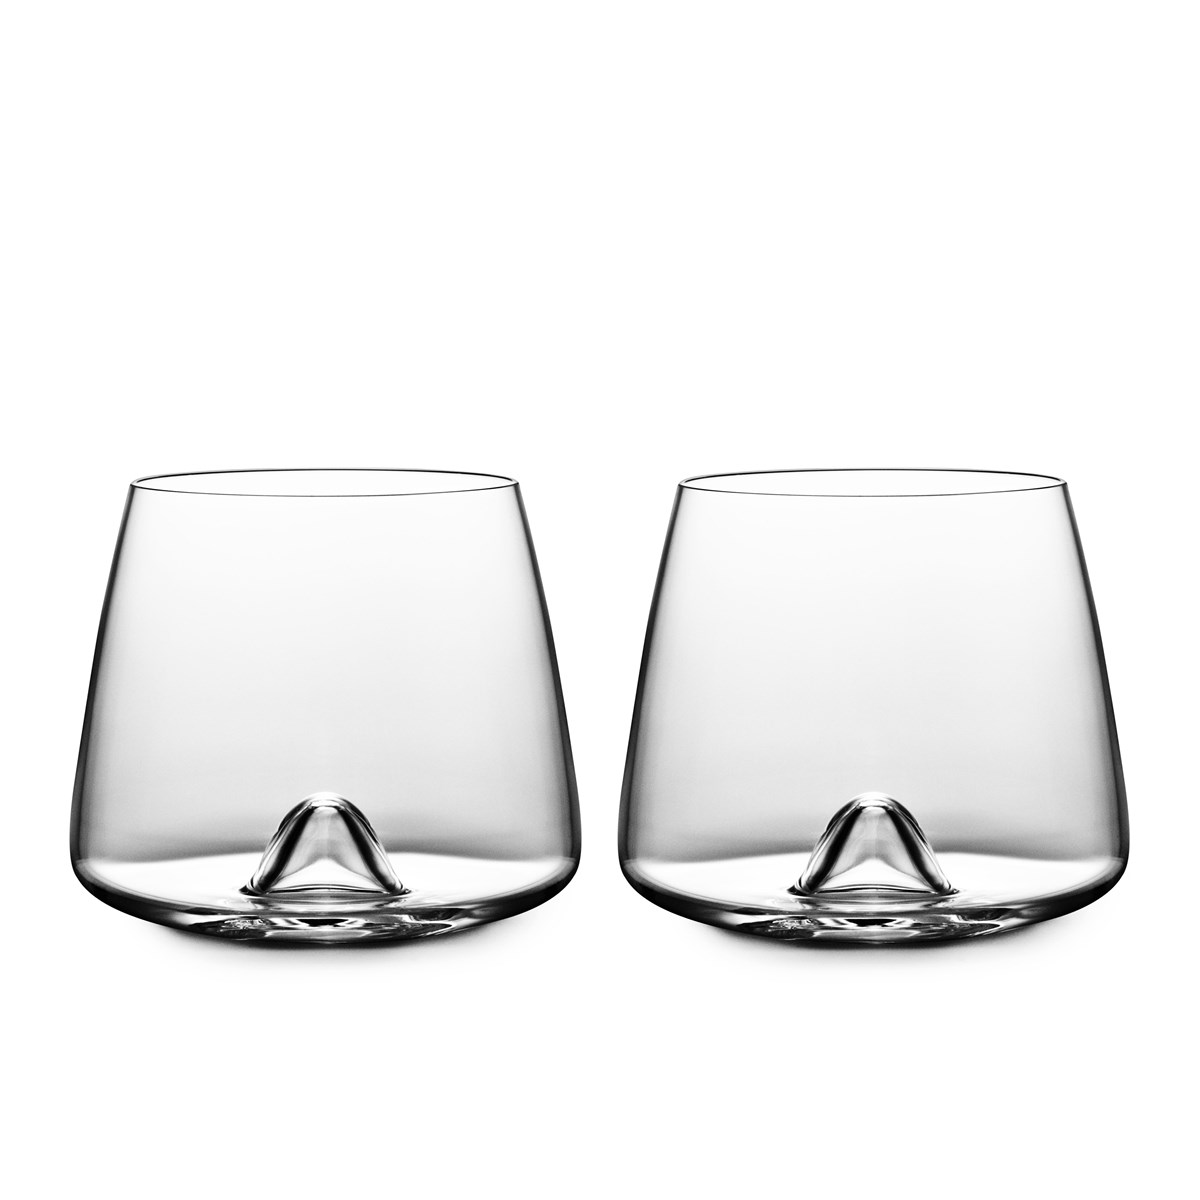 whisky glasses set of 2